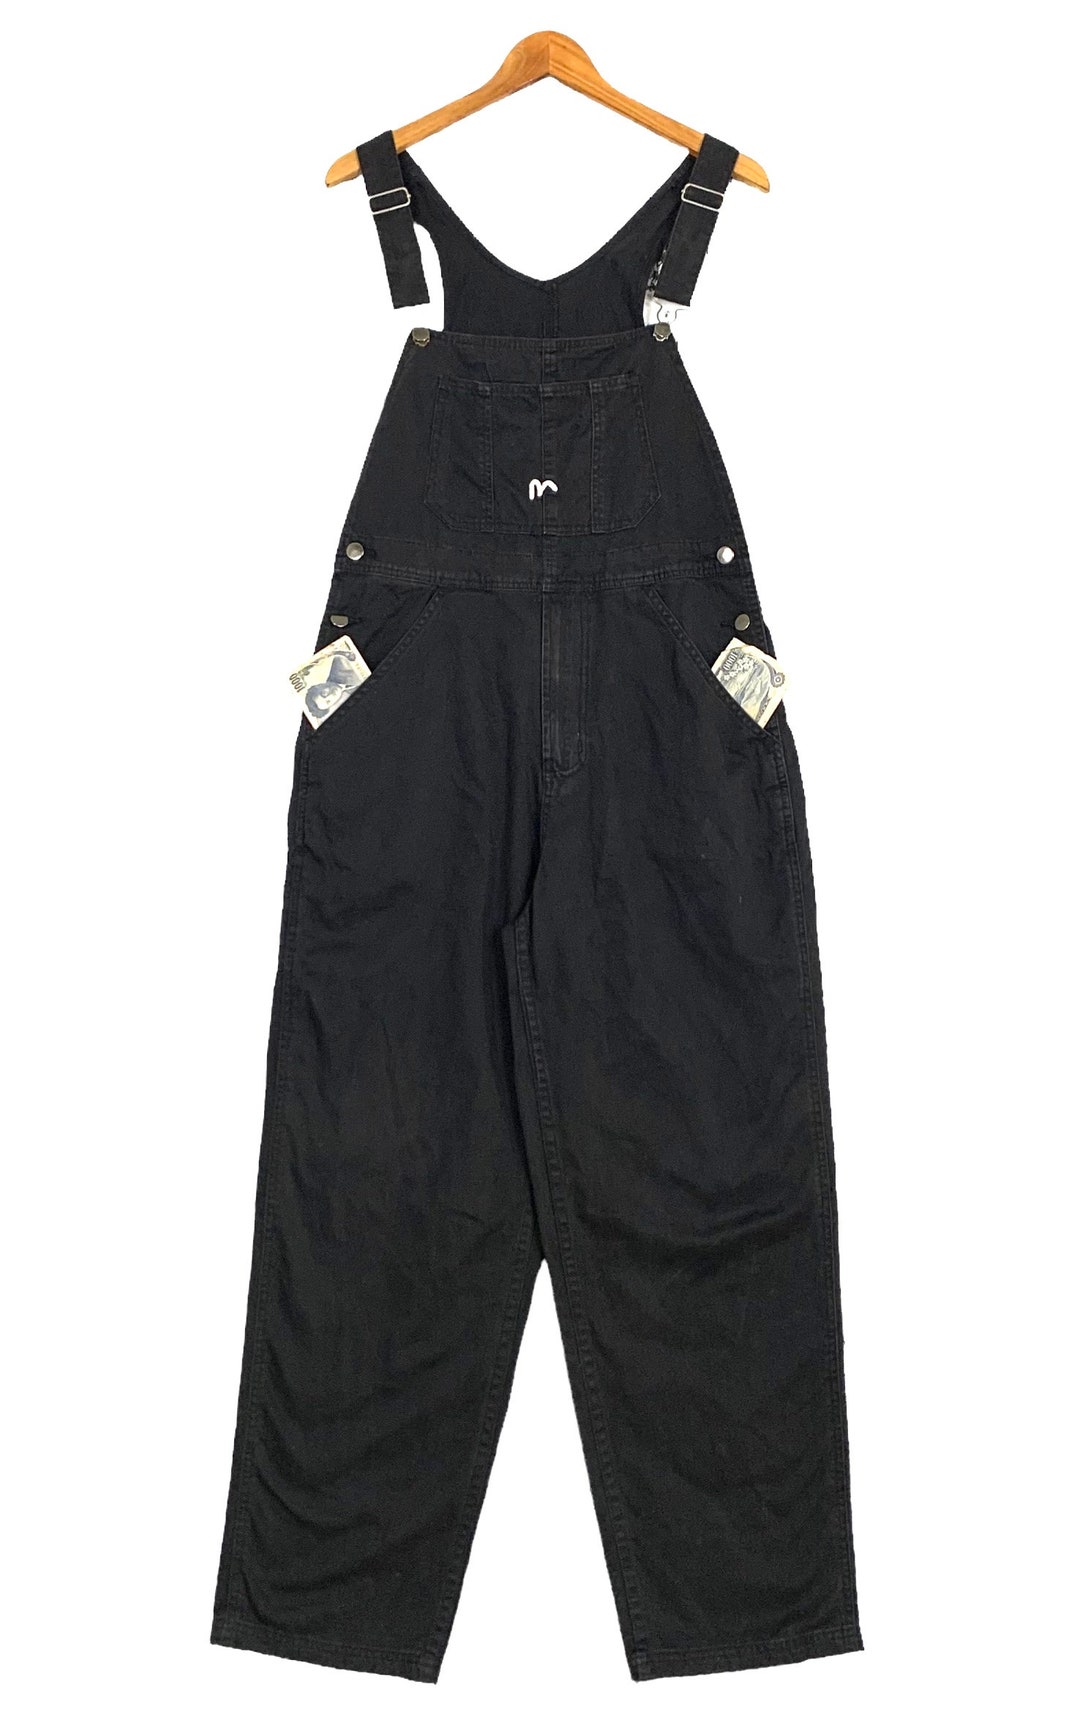 Vintage Evisu Designer Japanese Overalls Pants - Etsy